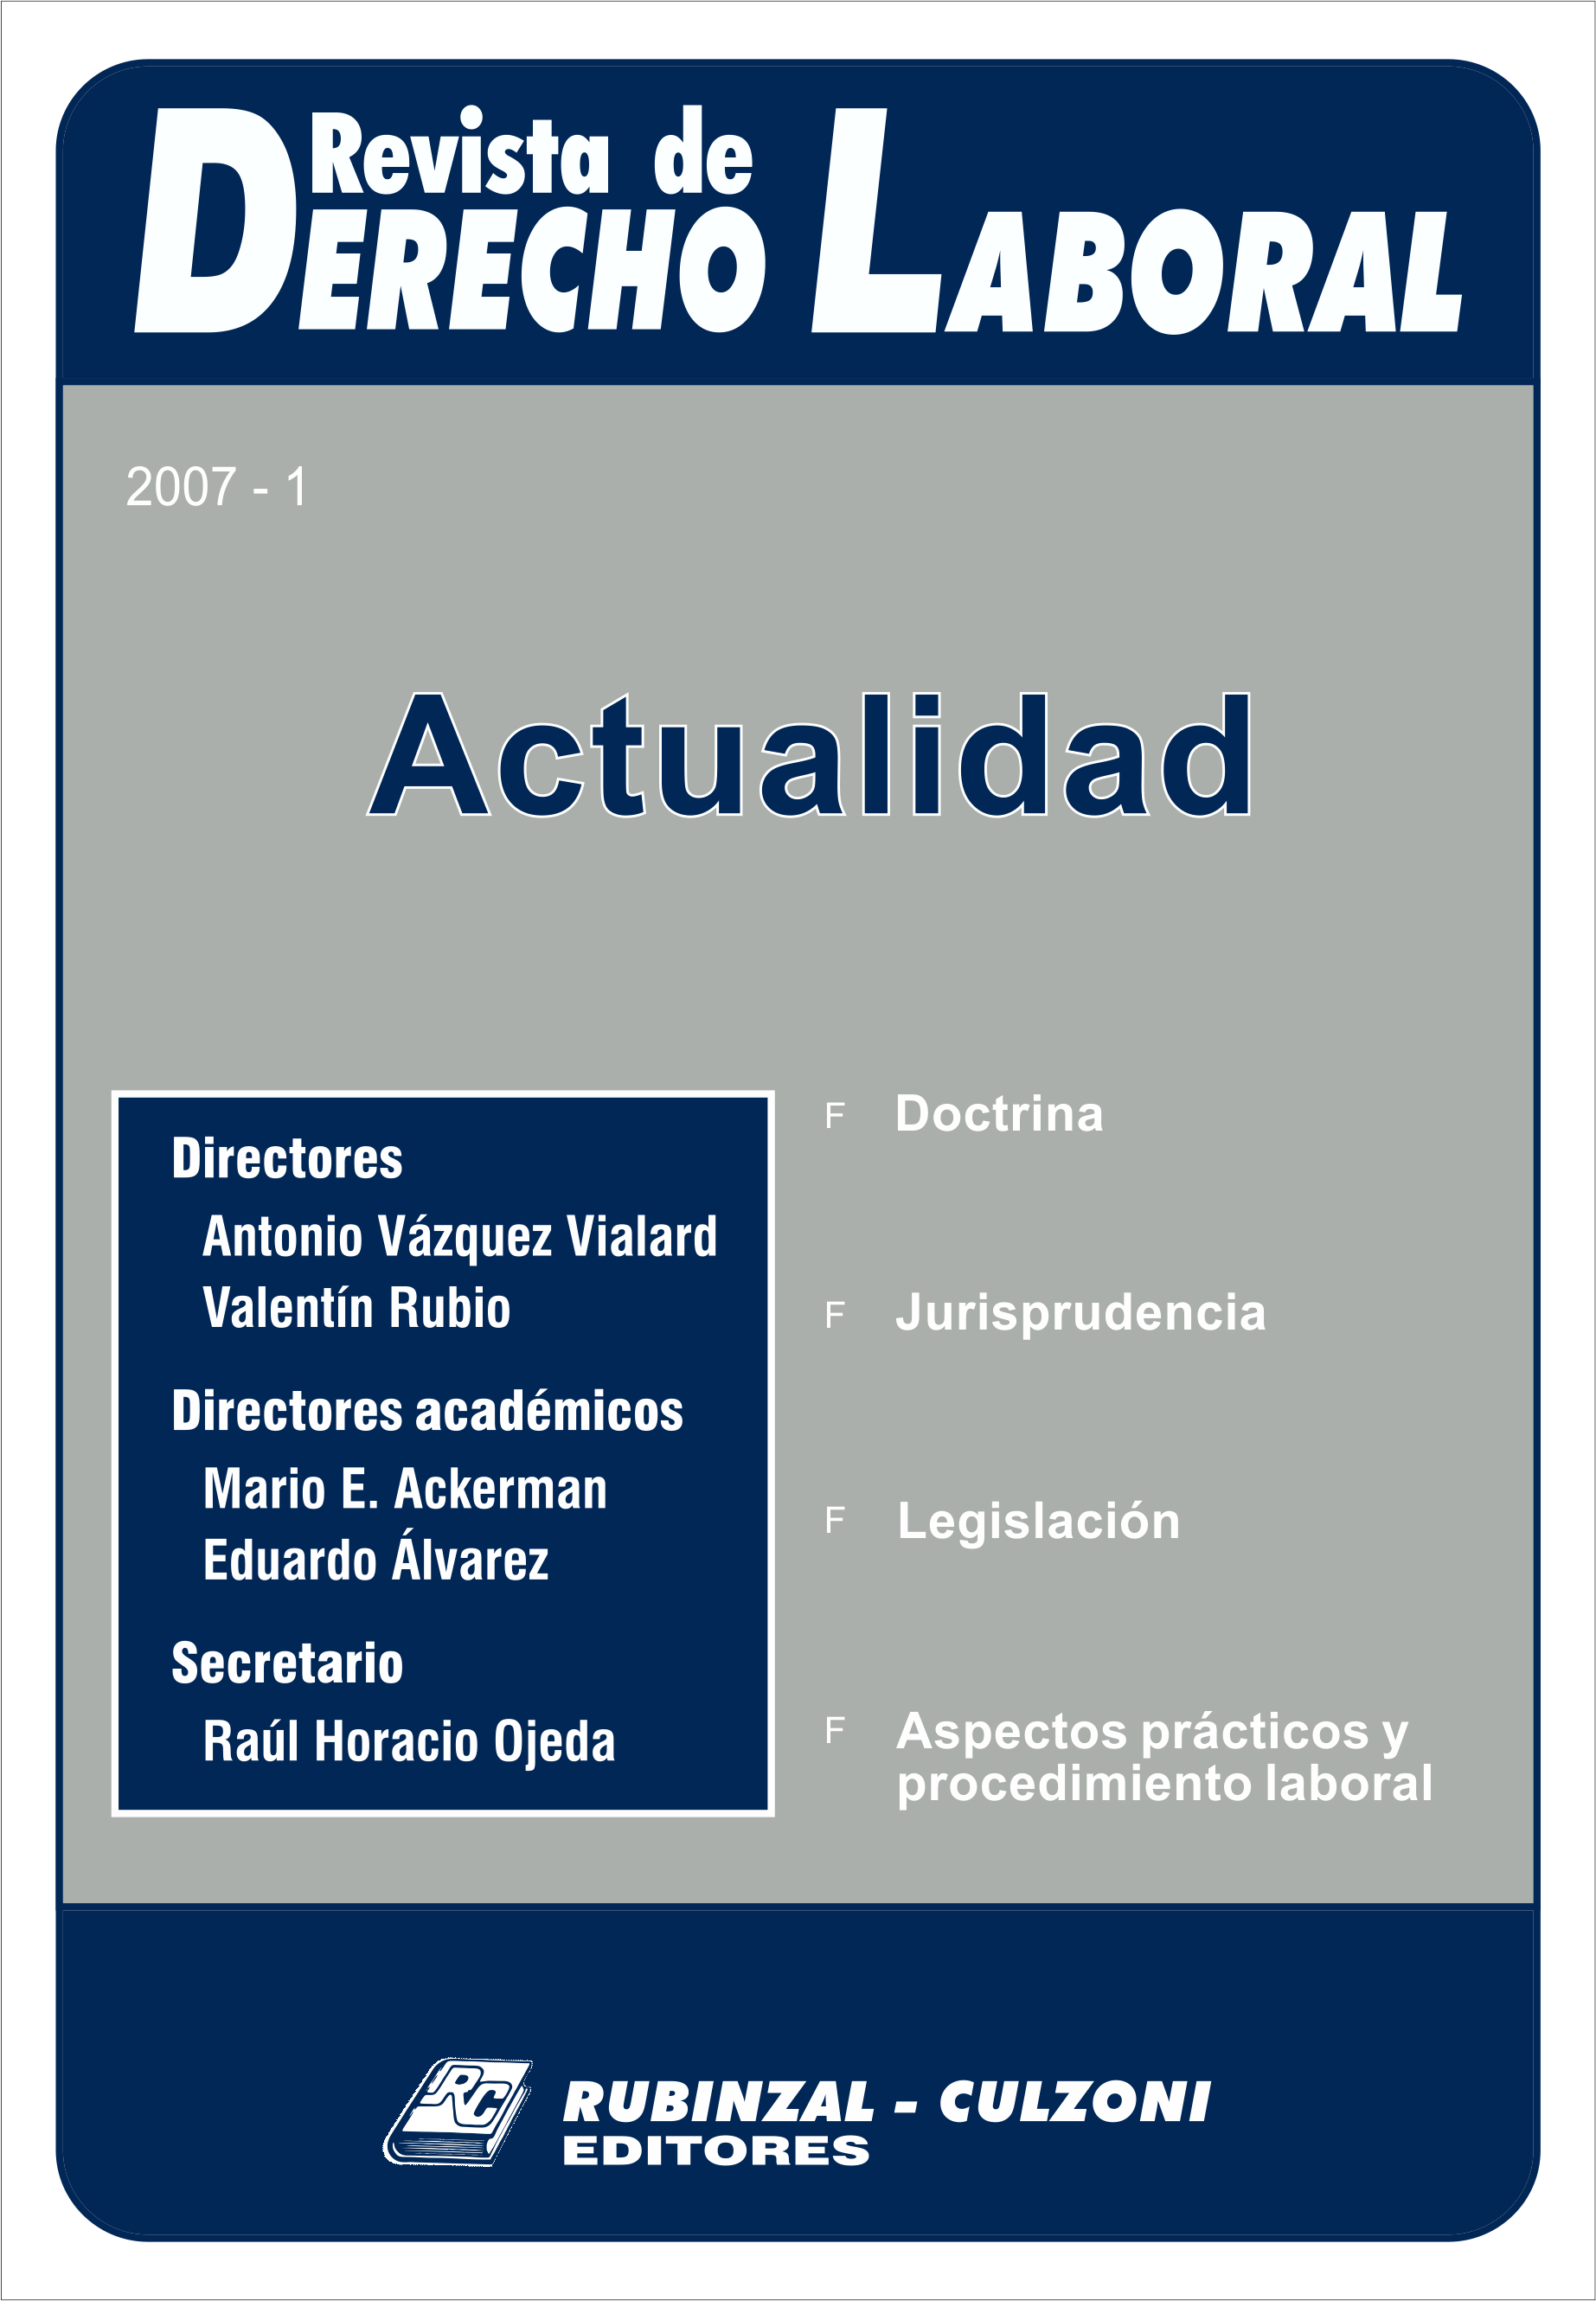 Revista de Derecho Laboral Actualidad - Año 2007 - 1